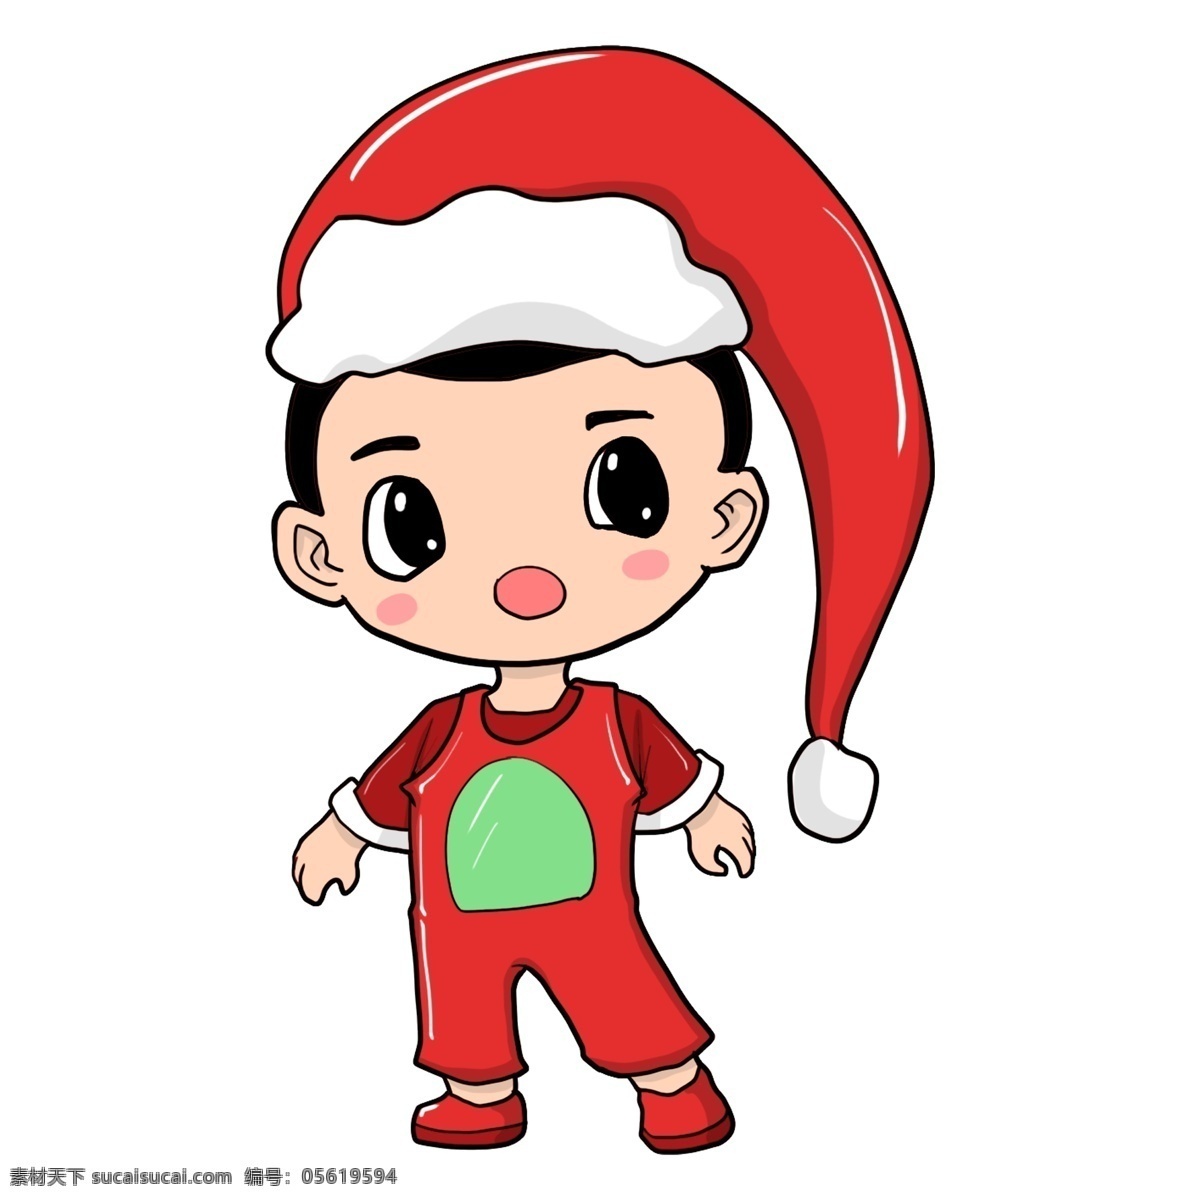 带 圣诞 帽 小孩 卡通圣诞帽 漂亮的圣诞帽 红色的衣服 手绘圣诞帽 漂亮的小孩 圣诞节插画